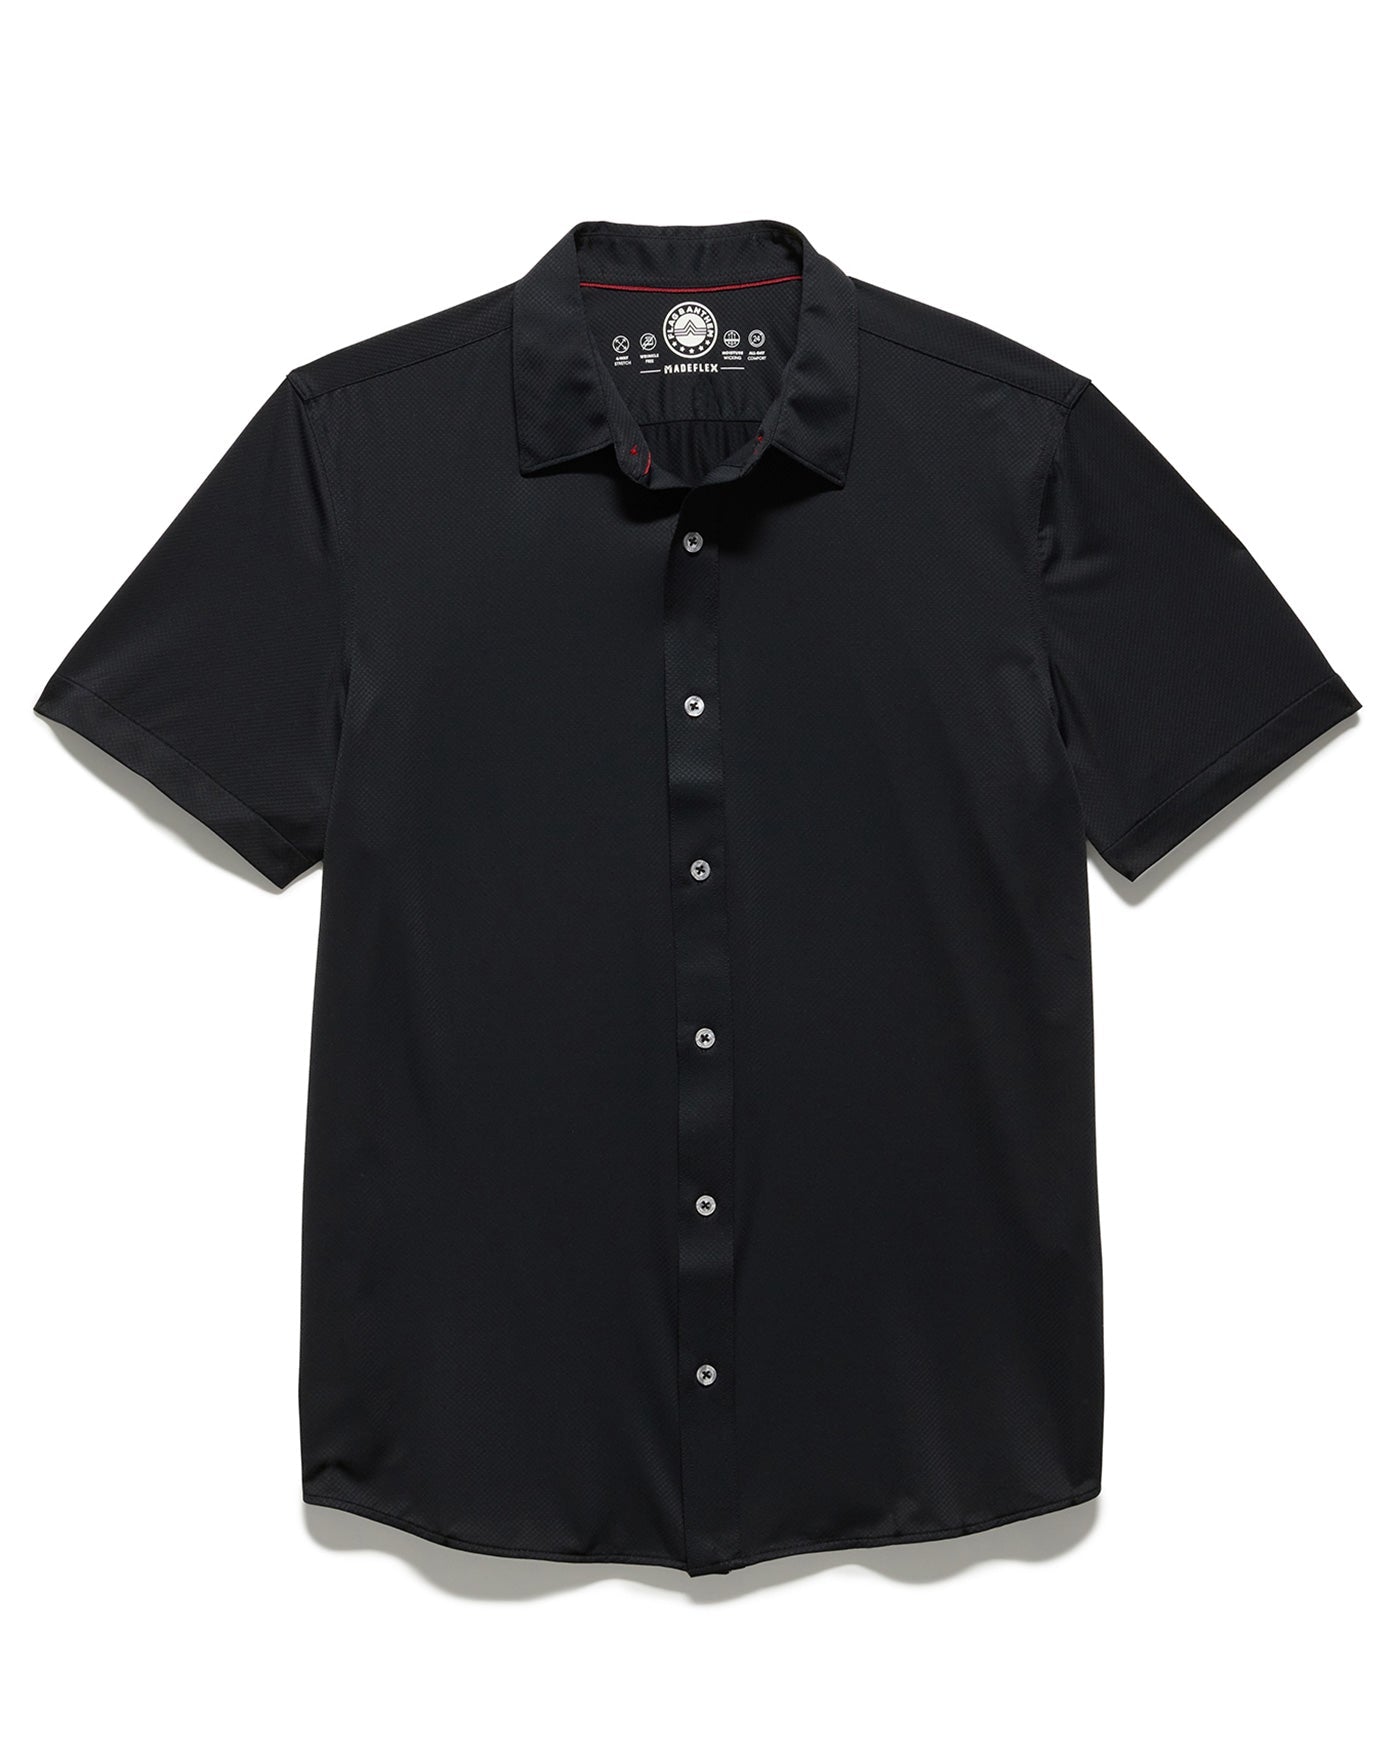 Madeflex Performance Commuter Shirt - BLACK